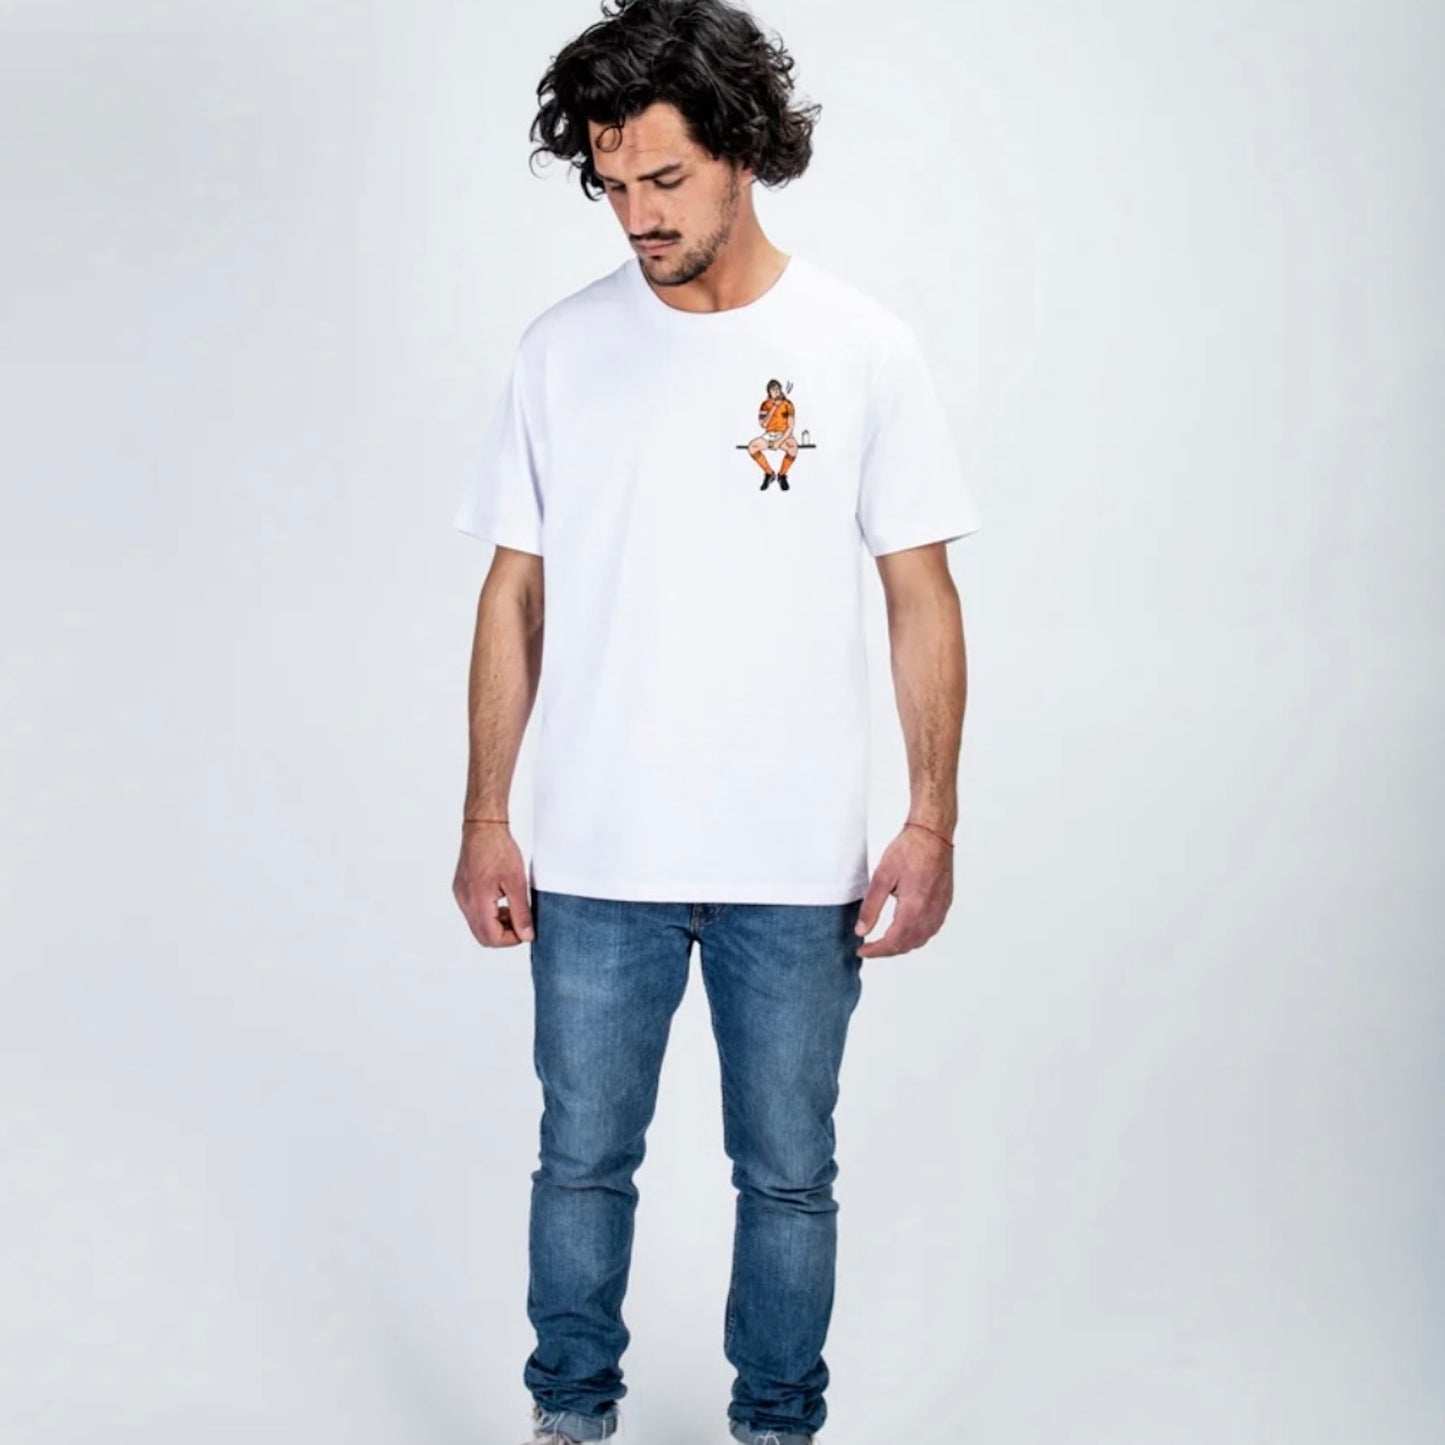 QUATTORDICEE Tシャツ - UNISEX - ホワイト